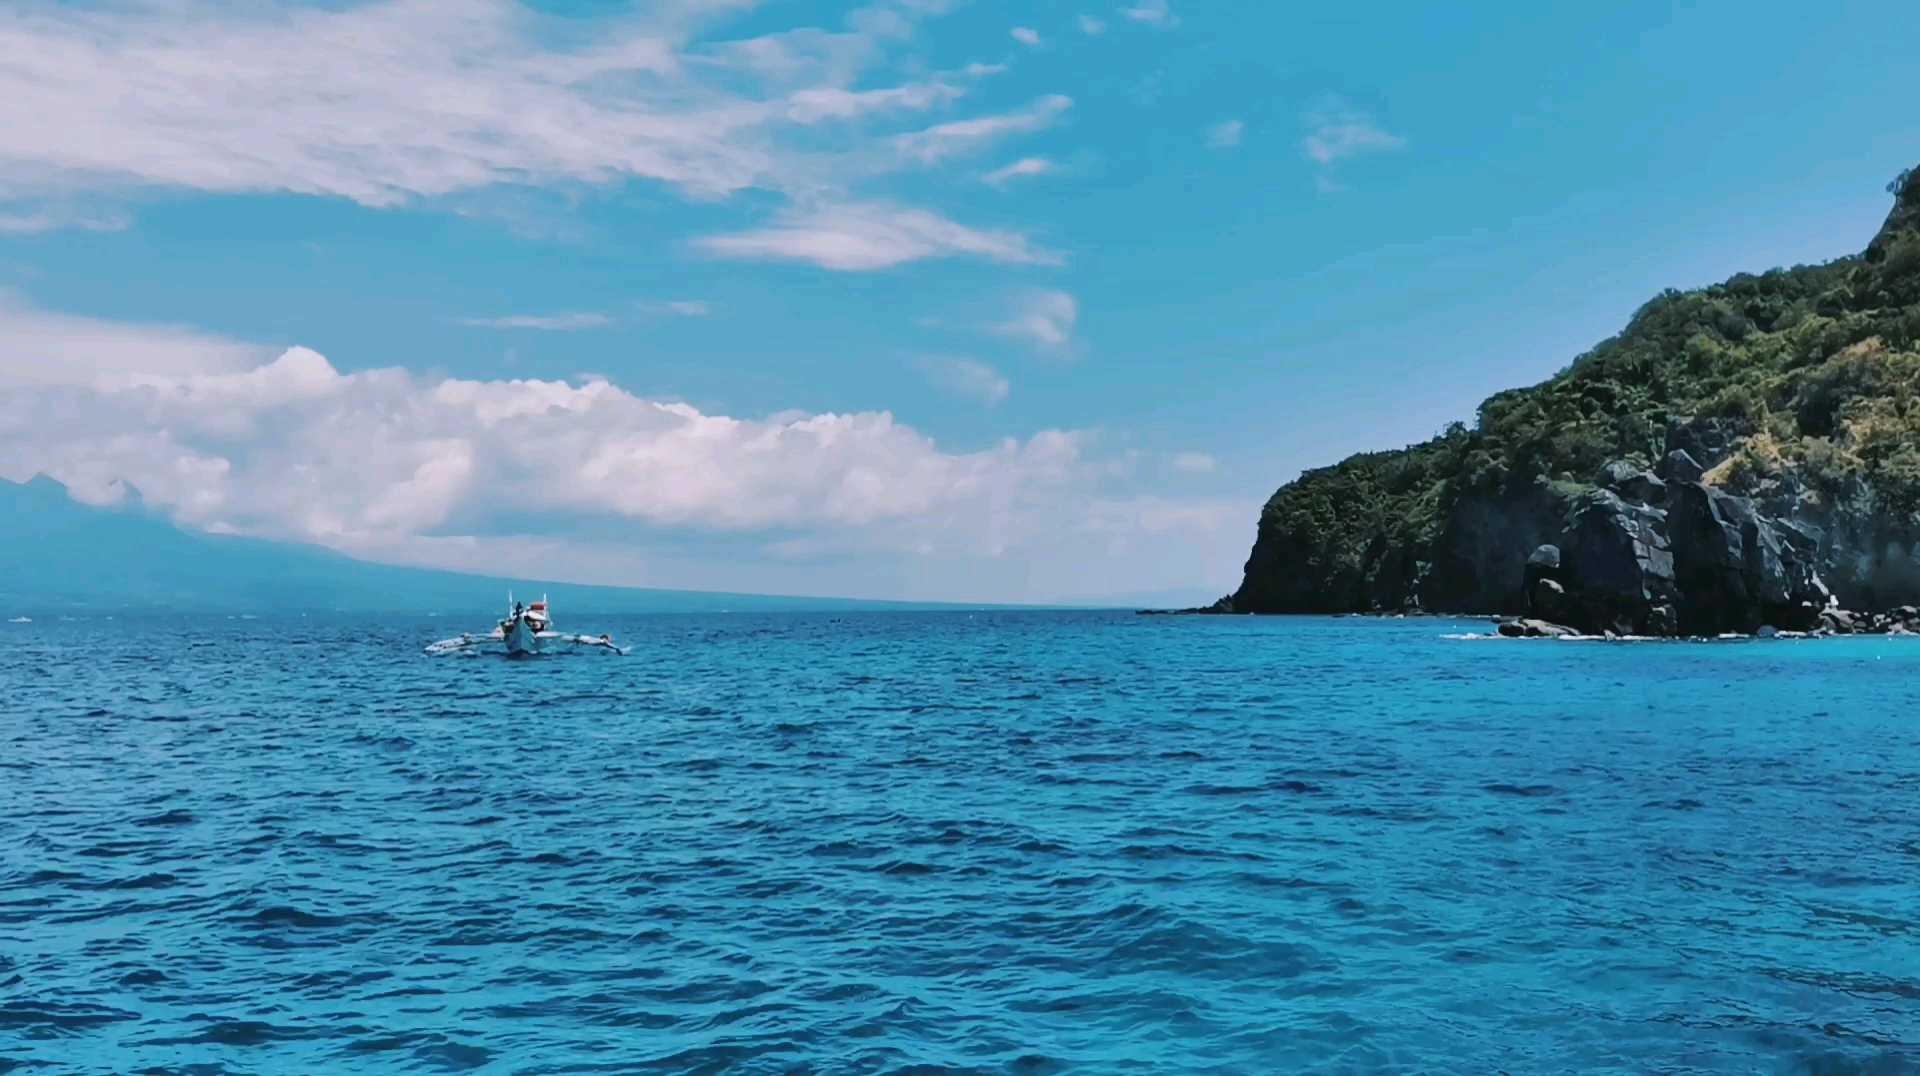 菲律宾网红阿波岛潜水VLOG | 📷视频里有惊喜哟  🇵🇭来到菲律宾一定不要错过阿波岛的浮潜/深潜 